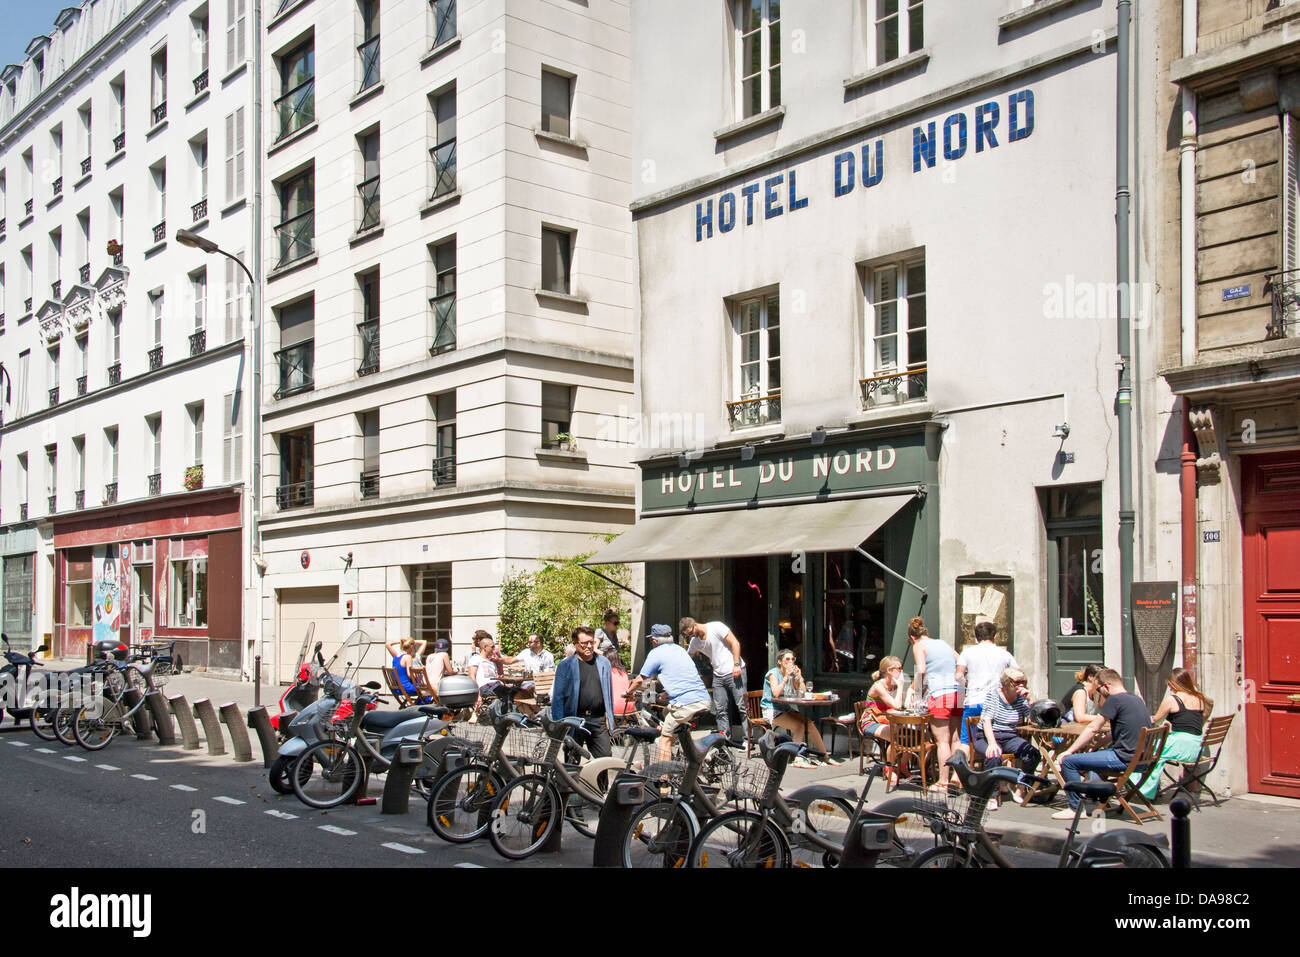 Das berühmte Hotel du Nord, in der Nähe von Canal Saint-Martin in Paris - Frankreich Stockfoto